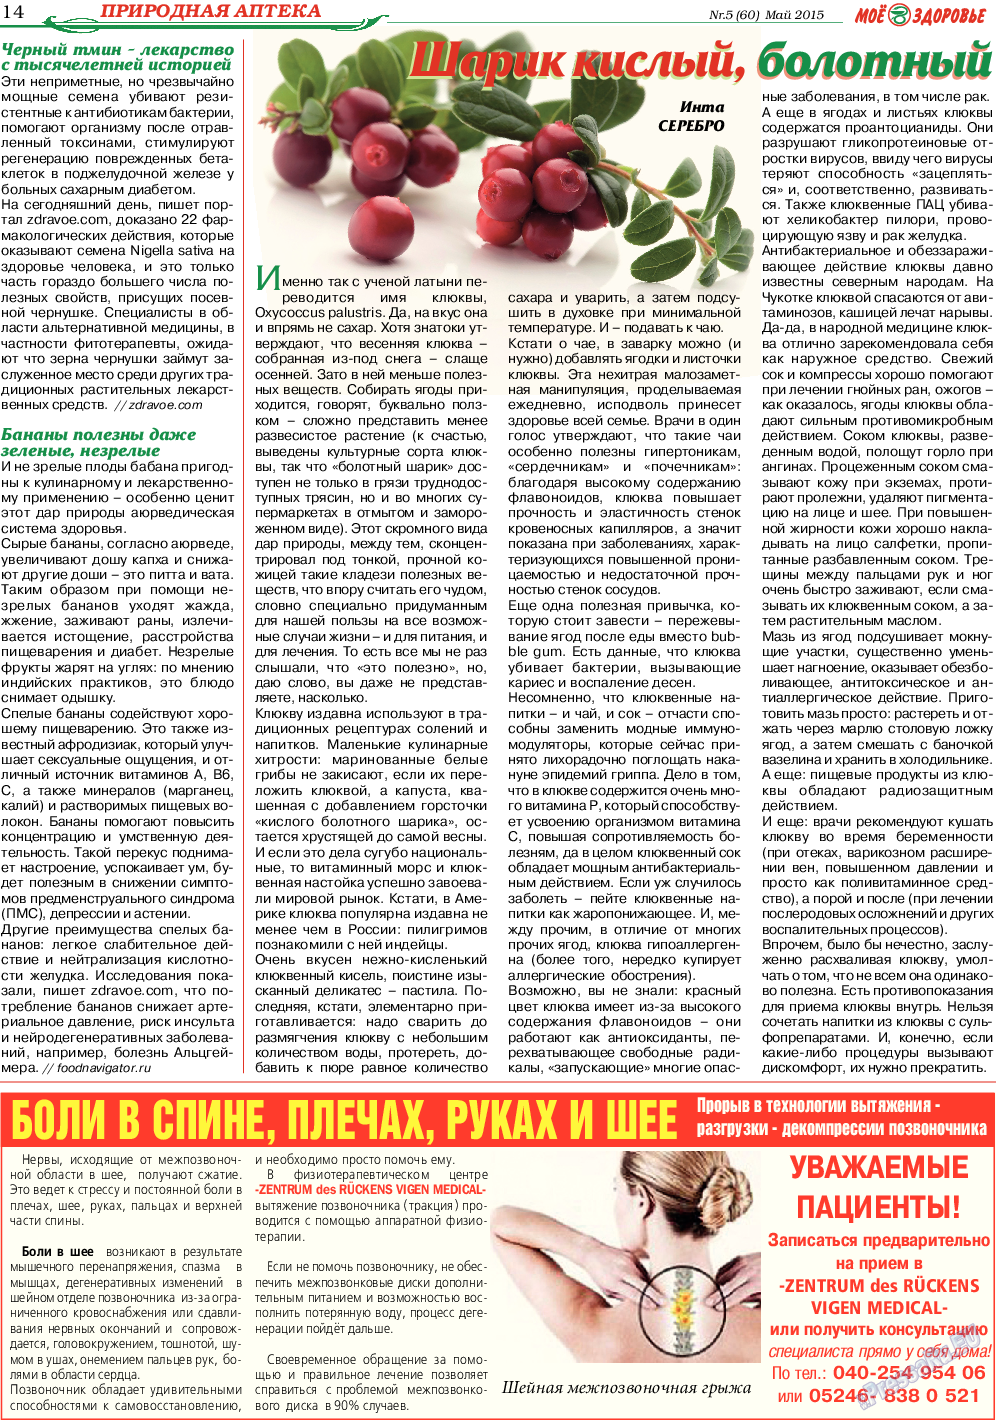 Кругозор, газета. 2015 №5 стр.14